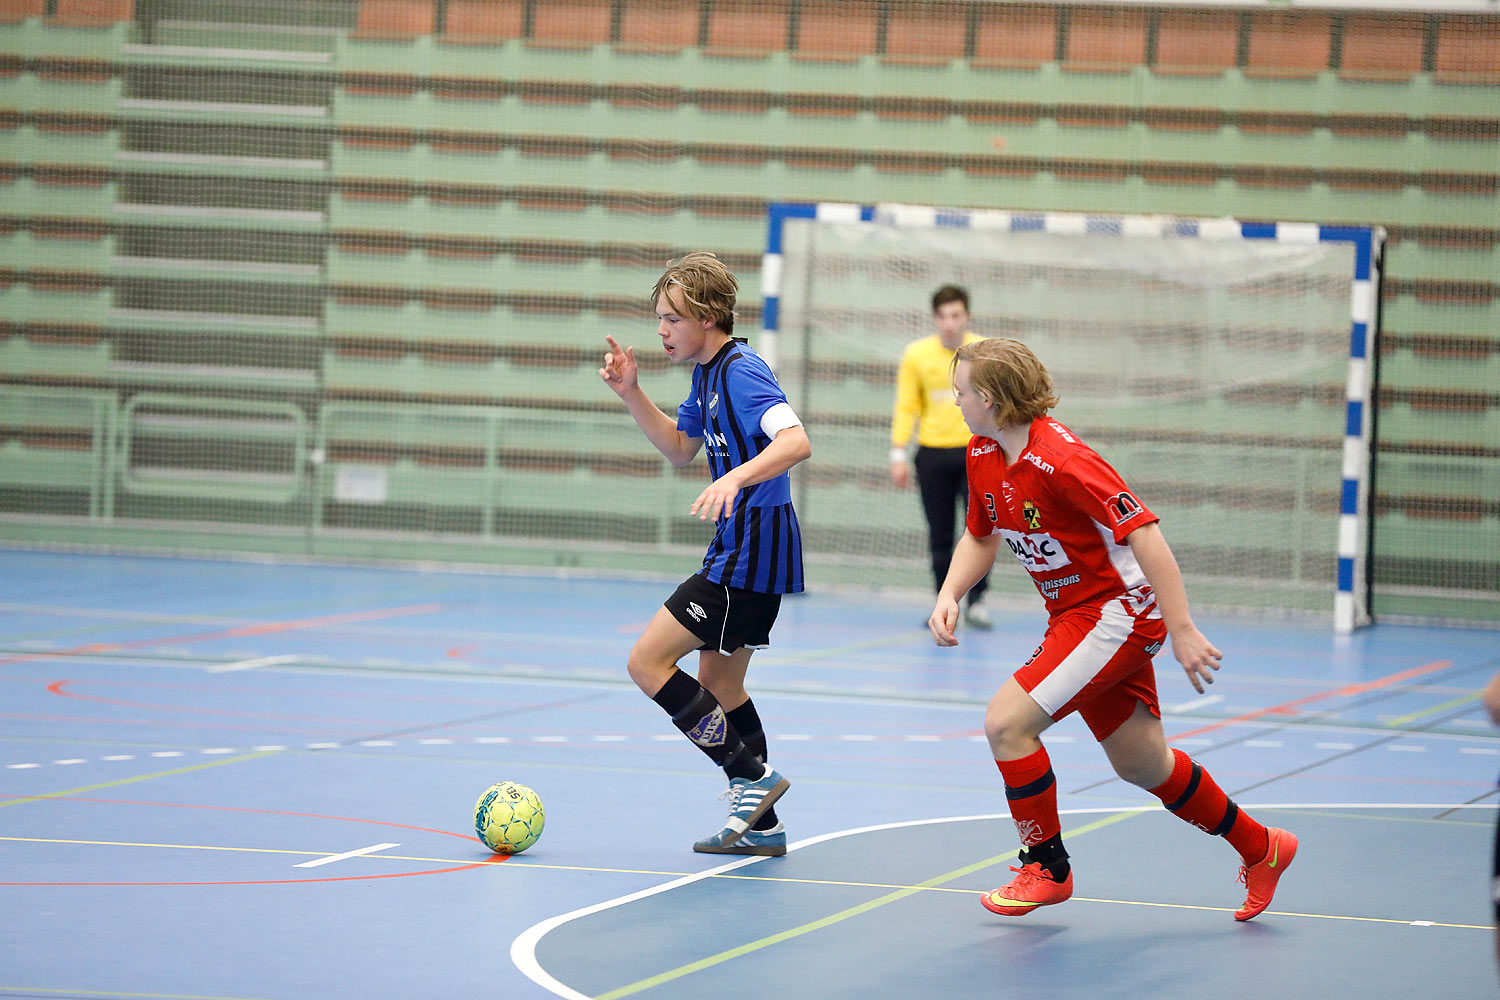 Skövde Futsalcup Herrjuniorer Ulricehamns IFK-Töreboda IK,herr,Arena Skövde,Skövde,Sverige,Skövde Futsalcup 2016,Futsal,2016,141978